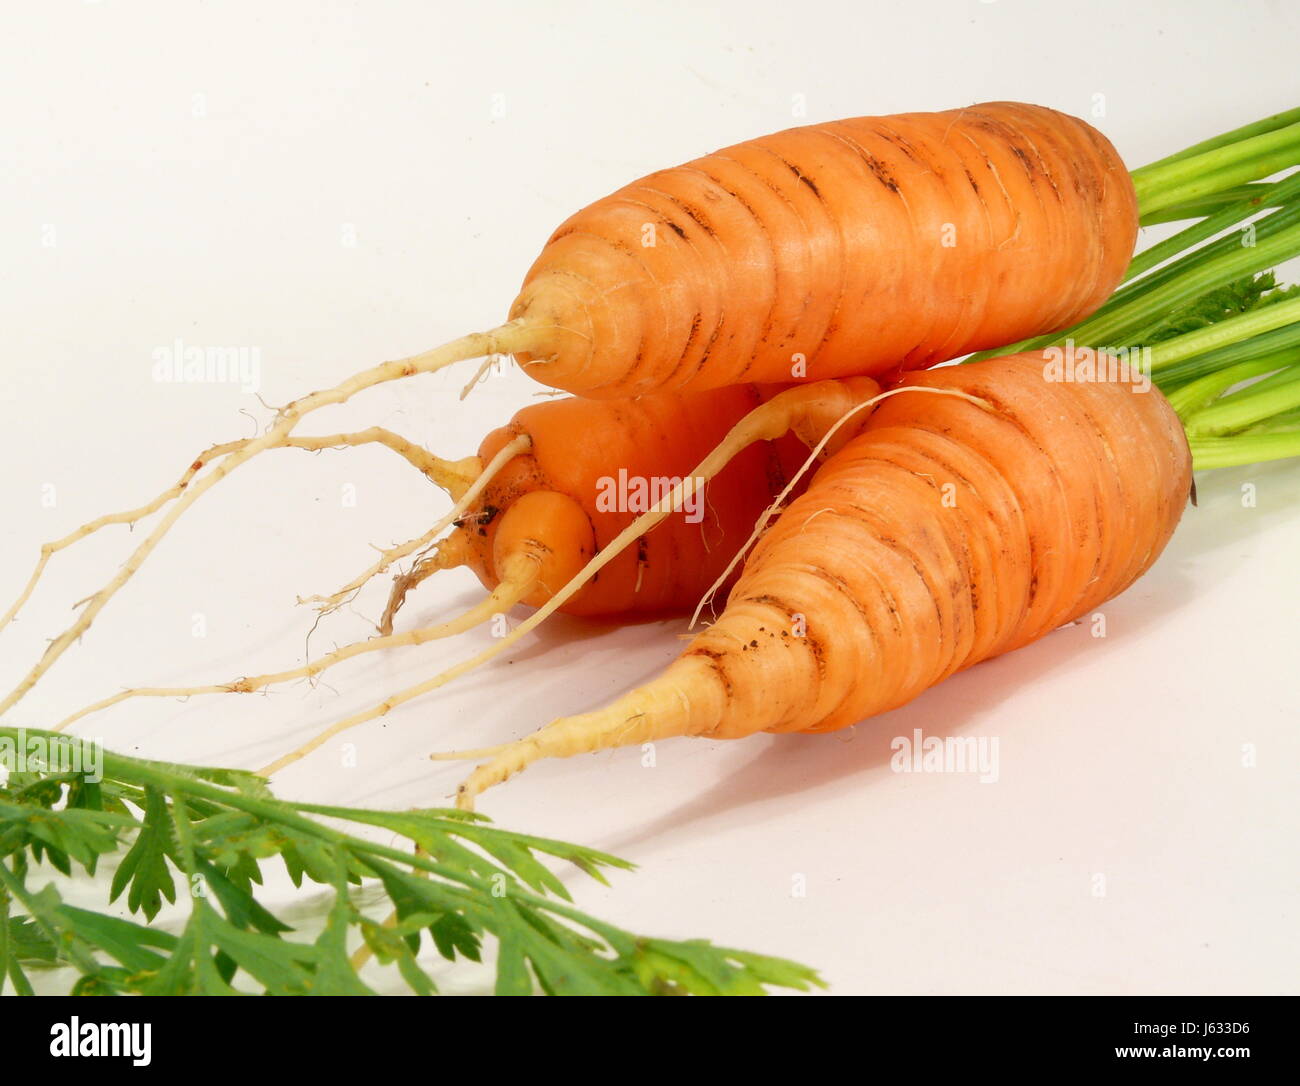 Wurzel Karotte Kohlrabi Blätter Laub Eco biologische Wurzel Gemüse Karotte orange Stockfoto